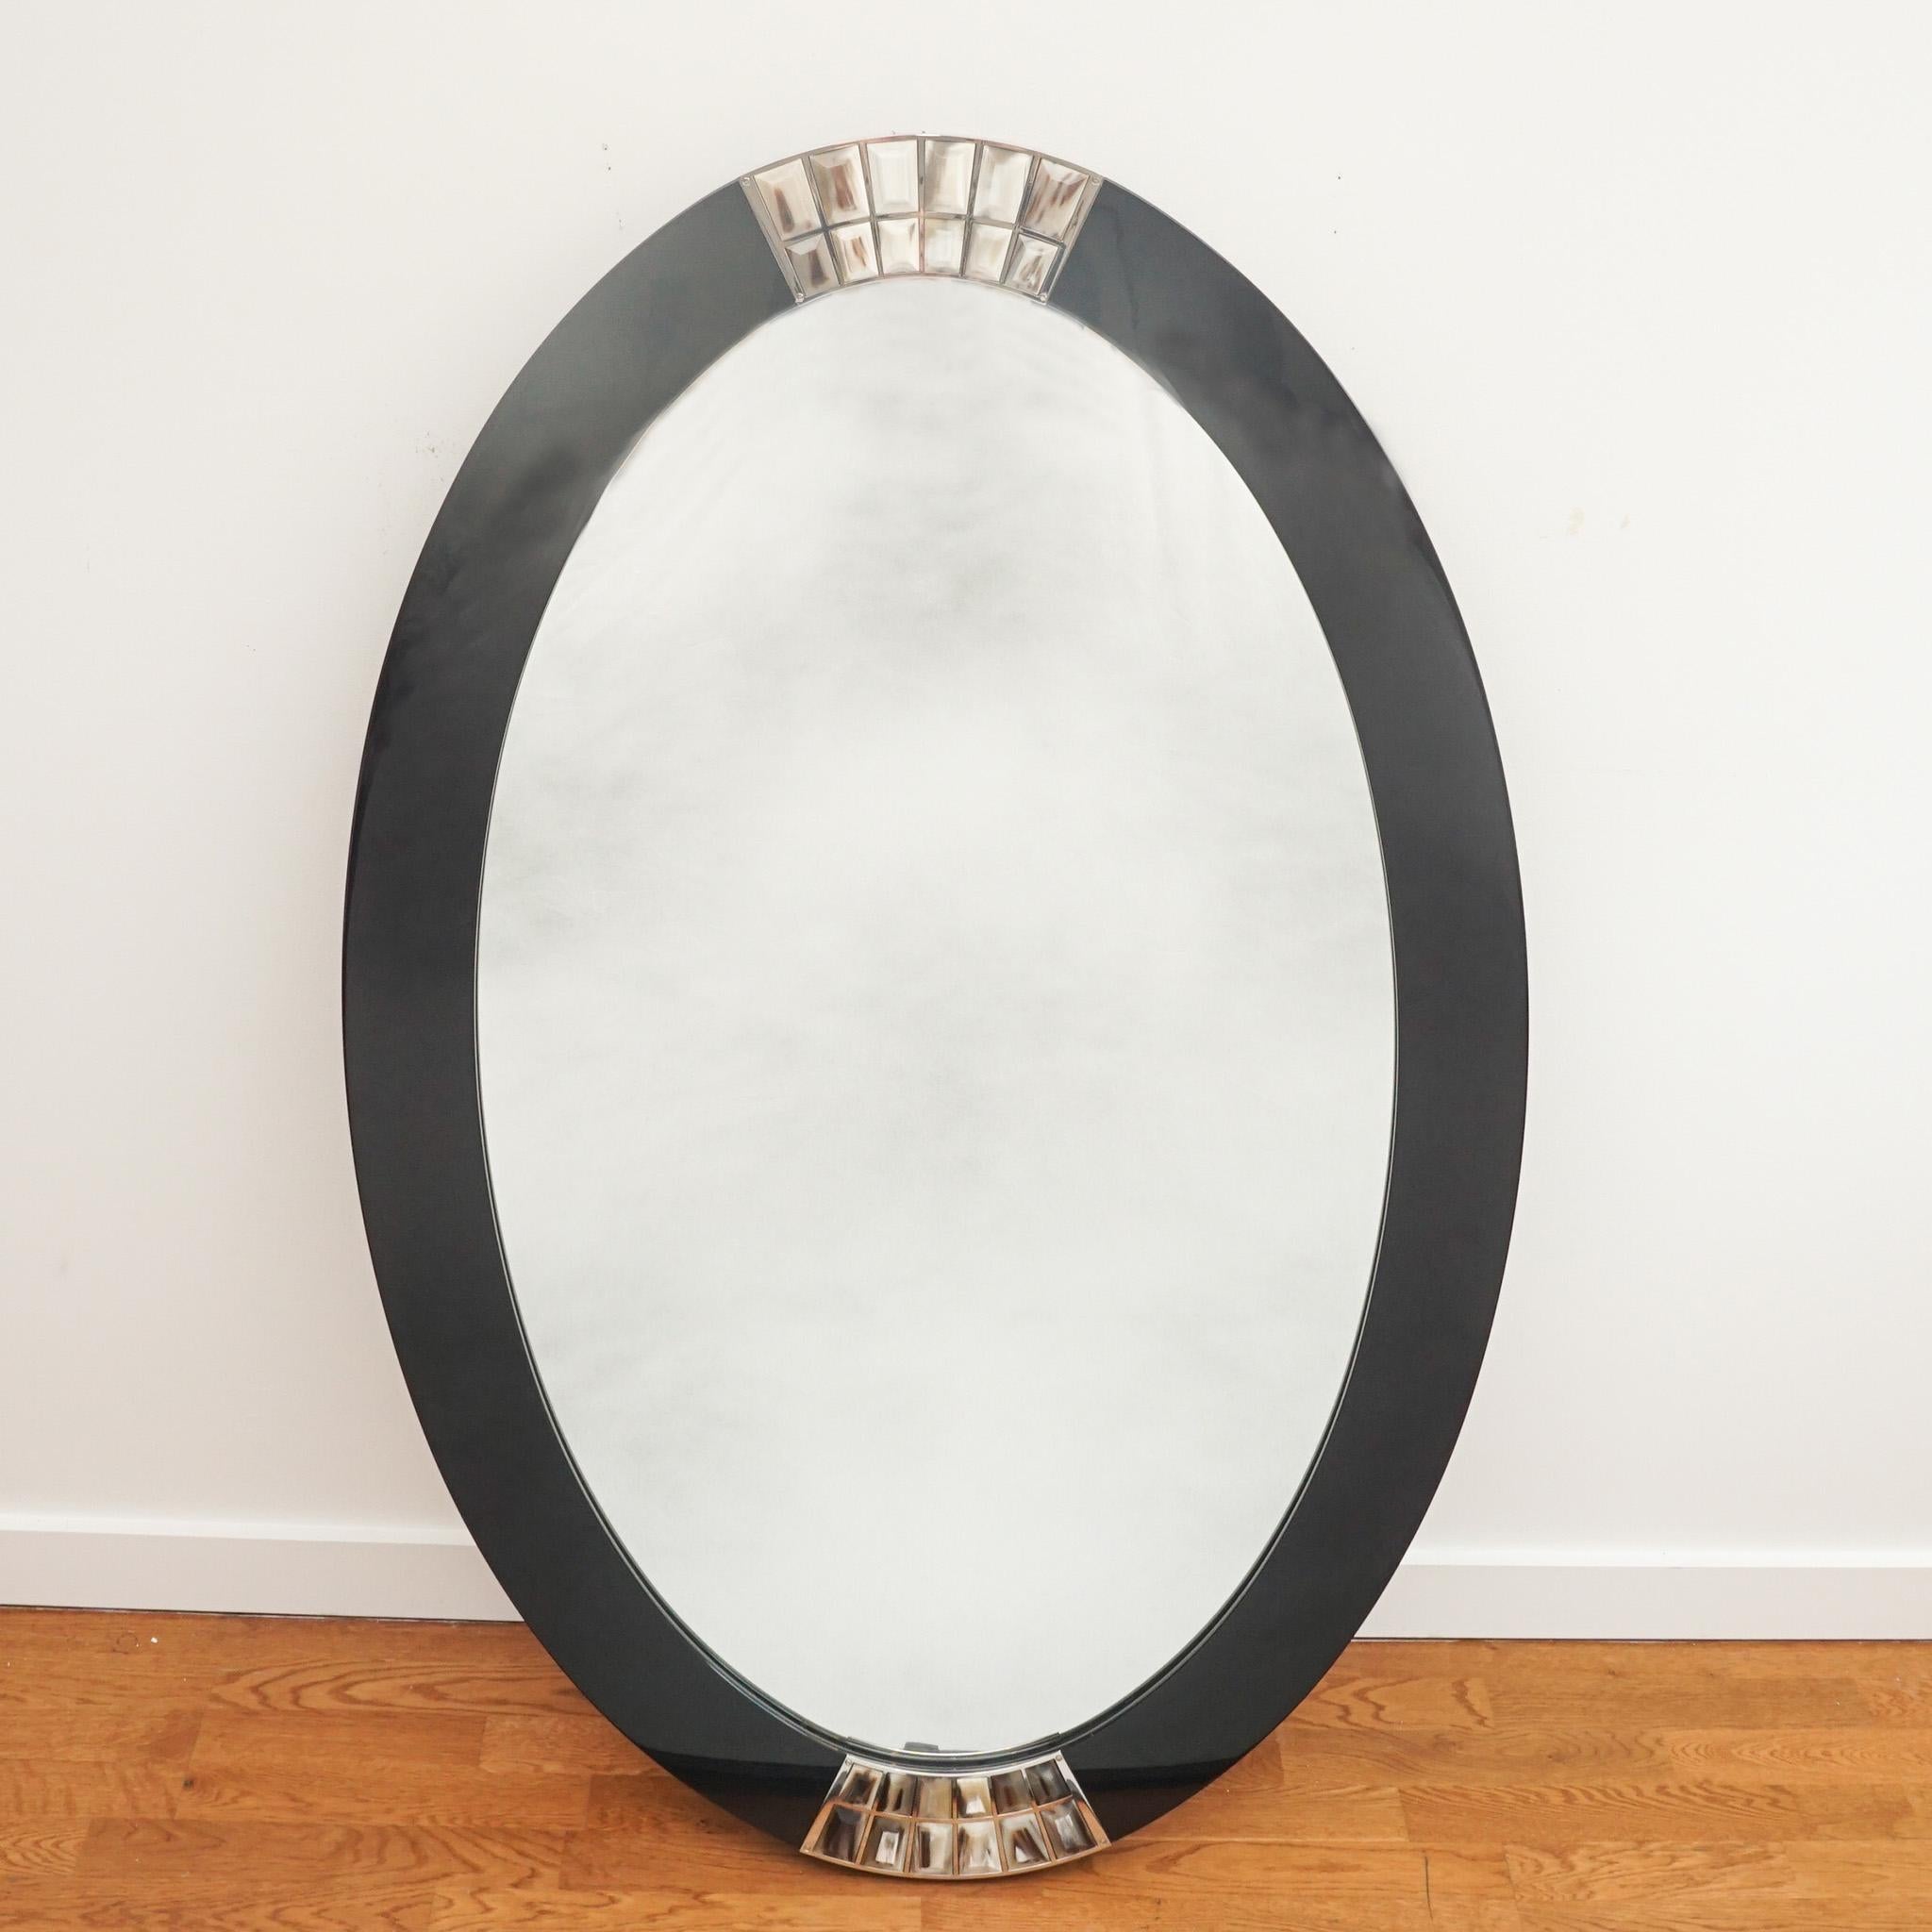 Dieser exquisite ovale Spiegel von Arcahorn ist ein Beispiel für die hochwertige Handwerkskunst und die luxuriösen Oberflächen, für die das Unternehmen bekannt ist.  Mit seinem schwarz lackierten Rahmen, der an der Ober- und Unterseite mit